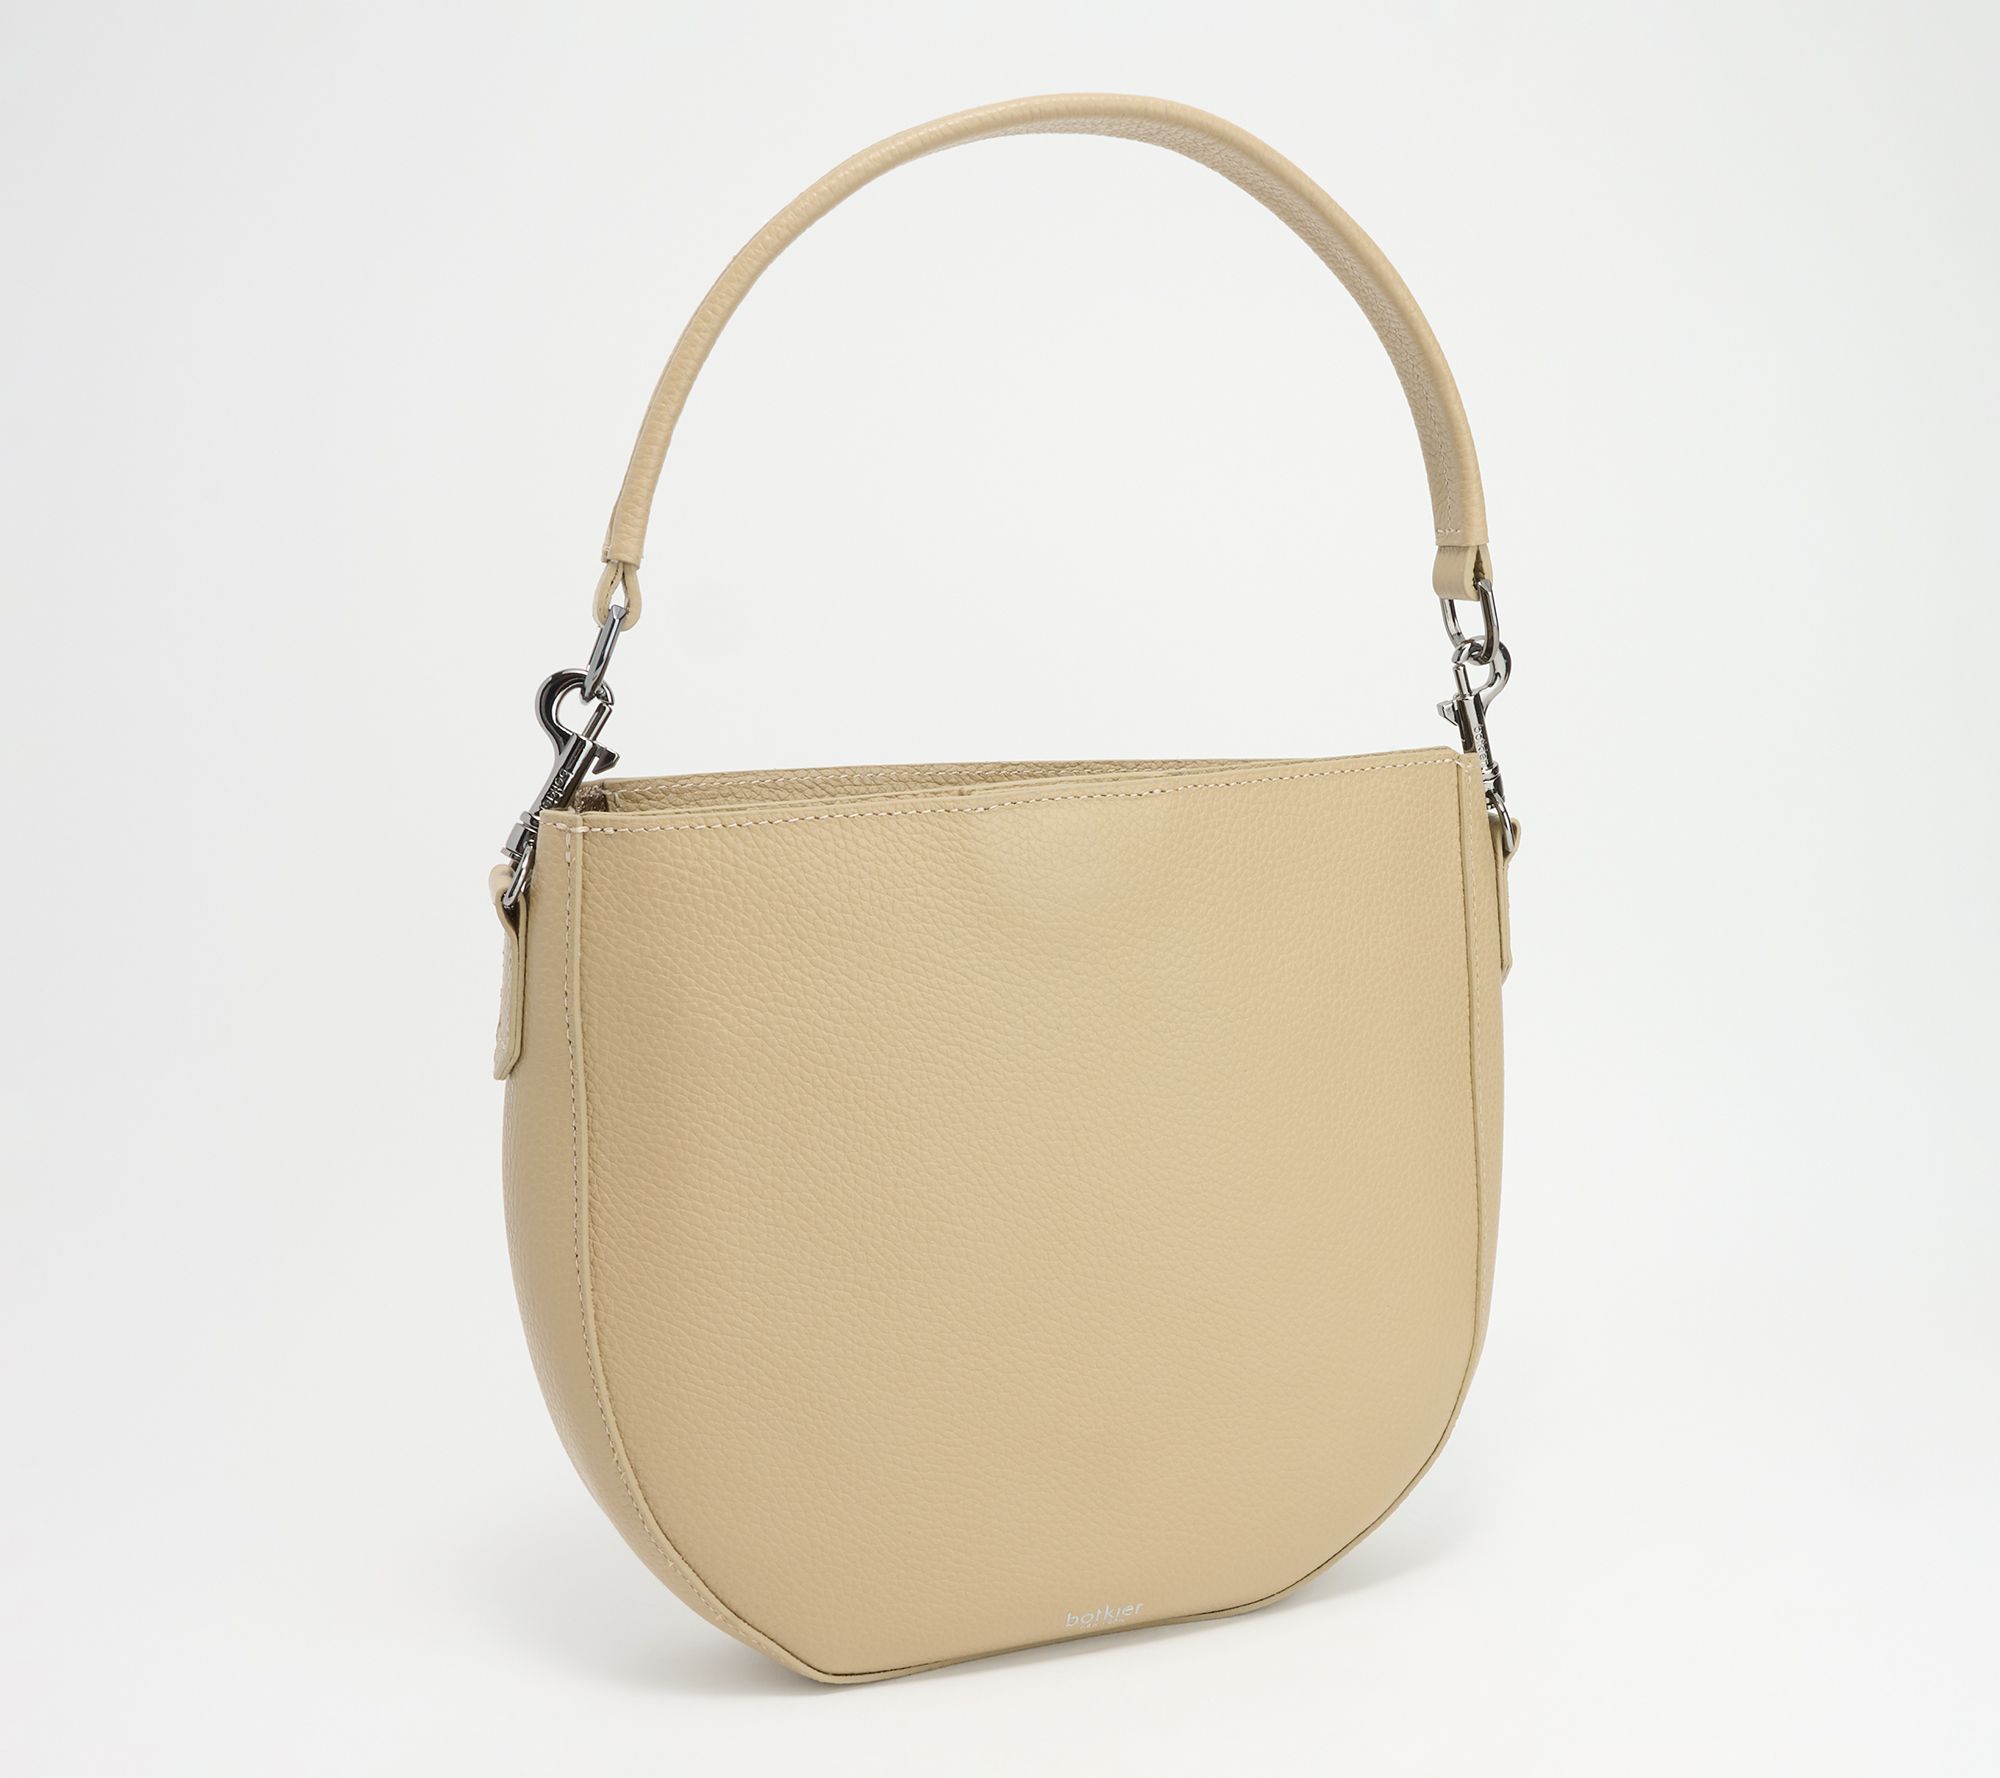 YOUI-GIFTS Camera Shoulder Bag Snapshot PU Leather Crossbody Bag Vintage  Novelty Cute Handbag Purse 